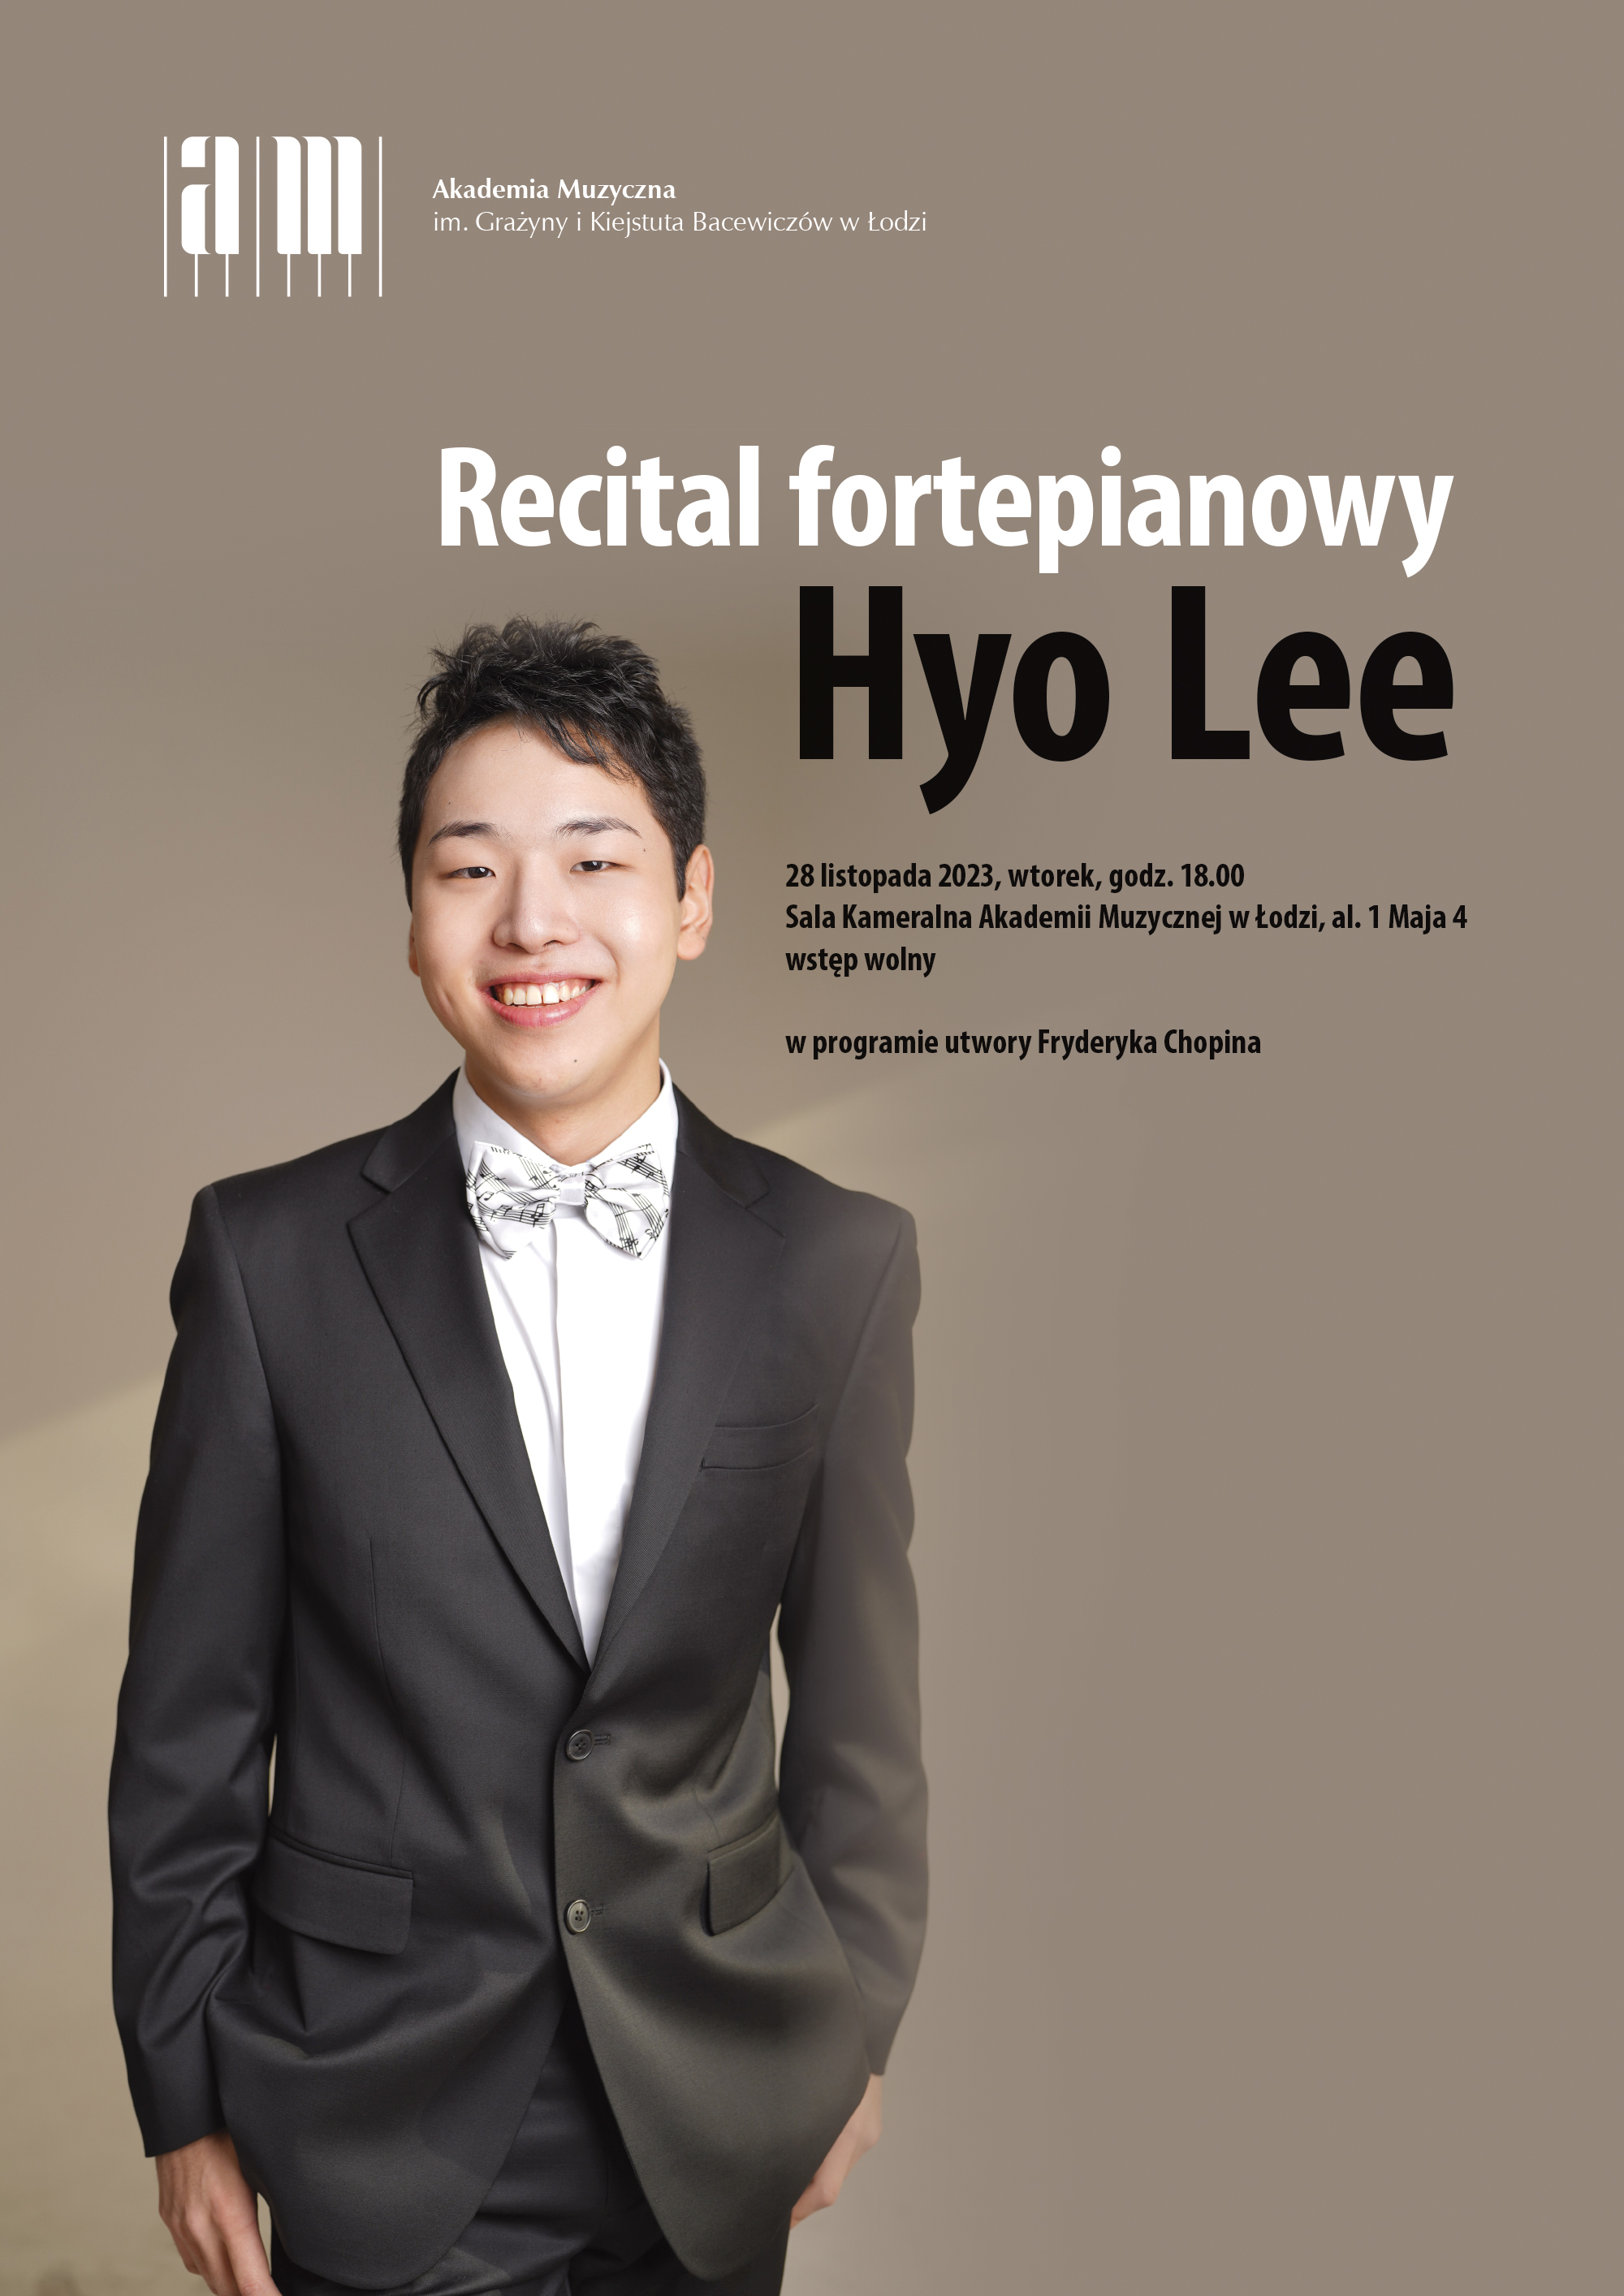 Recital fortepianowy Hyo Lee